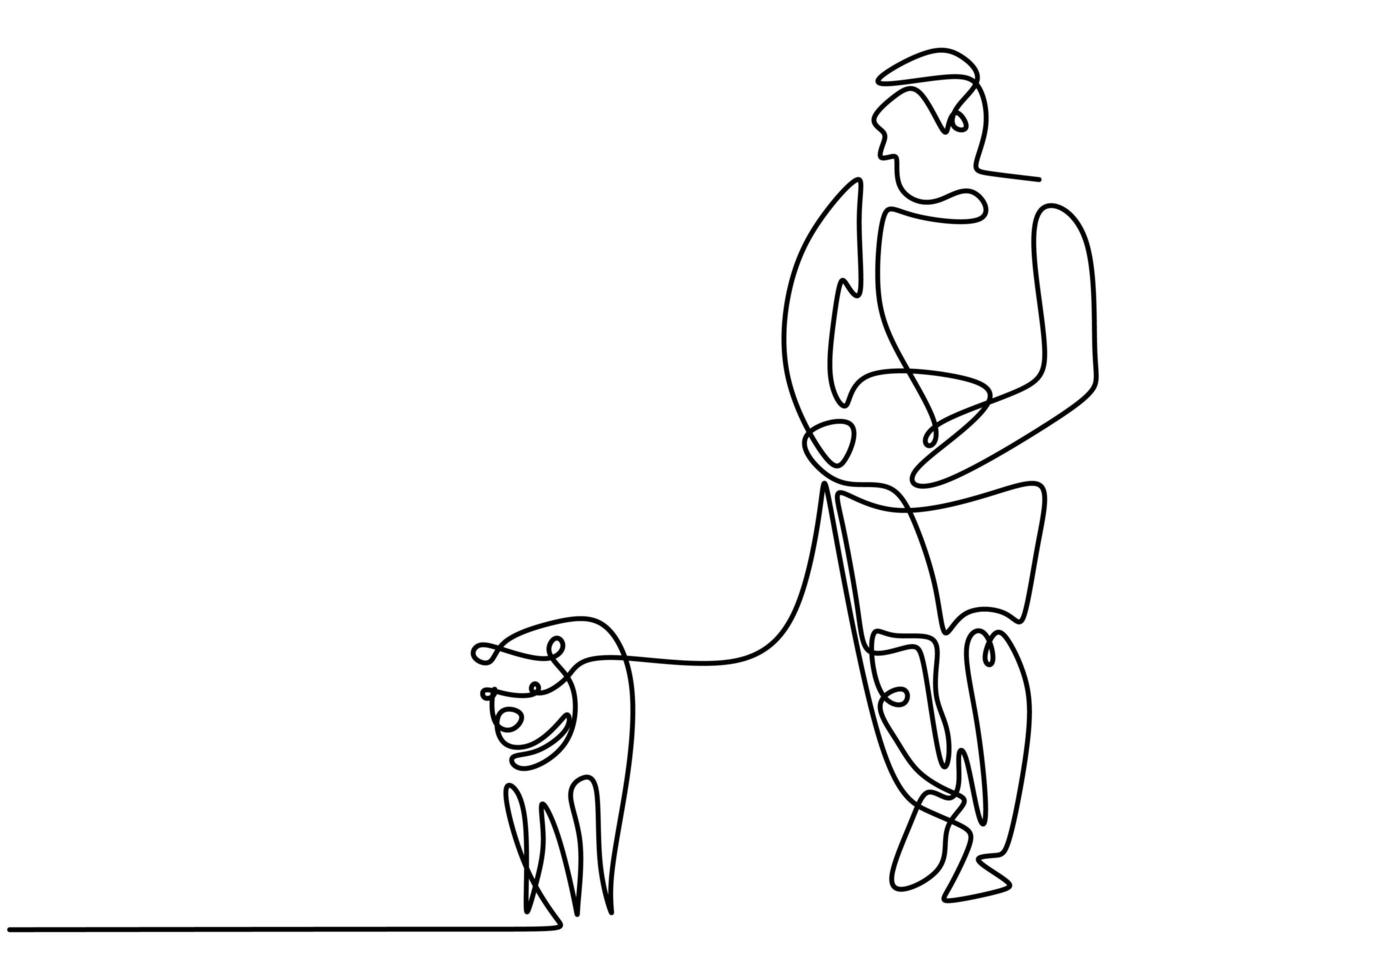 persoon die tijd doorbrengt met wandelen met een hond. spelen met hond. doorlopende enkele getekende lijn. vector illustratie.